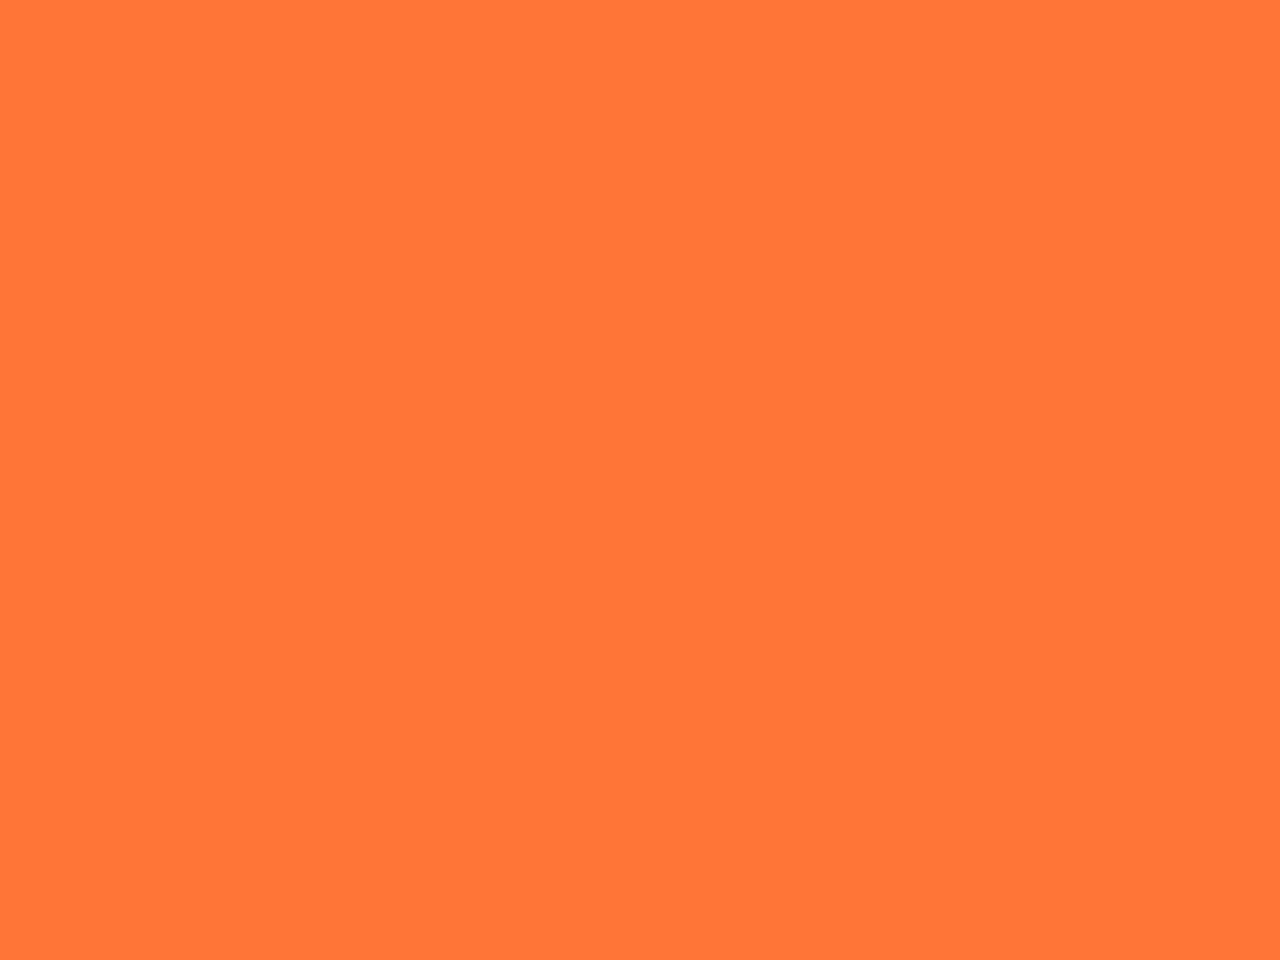 1280x960 Orange Crayola Solid Color Background